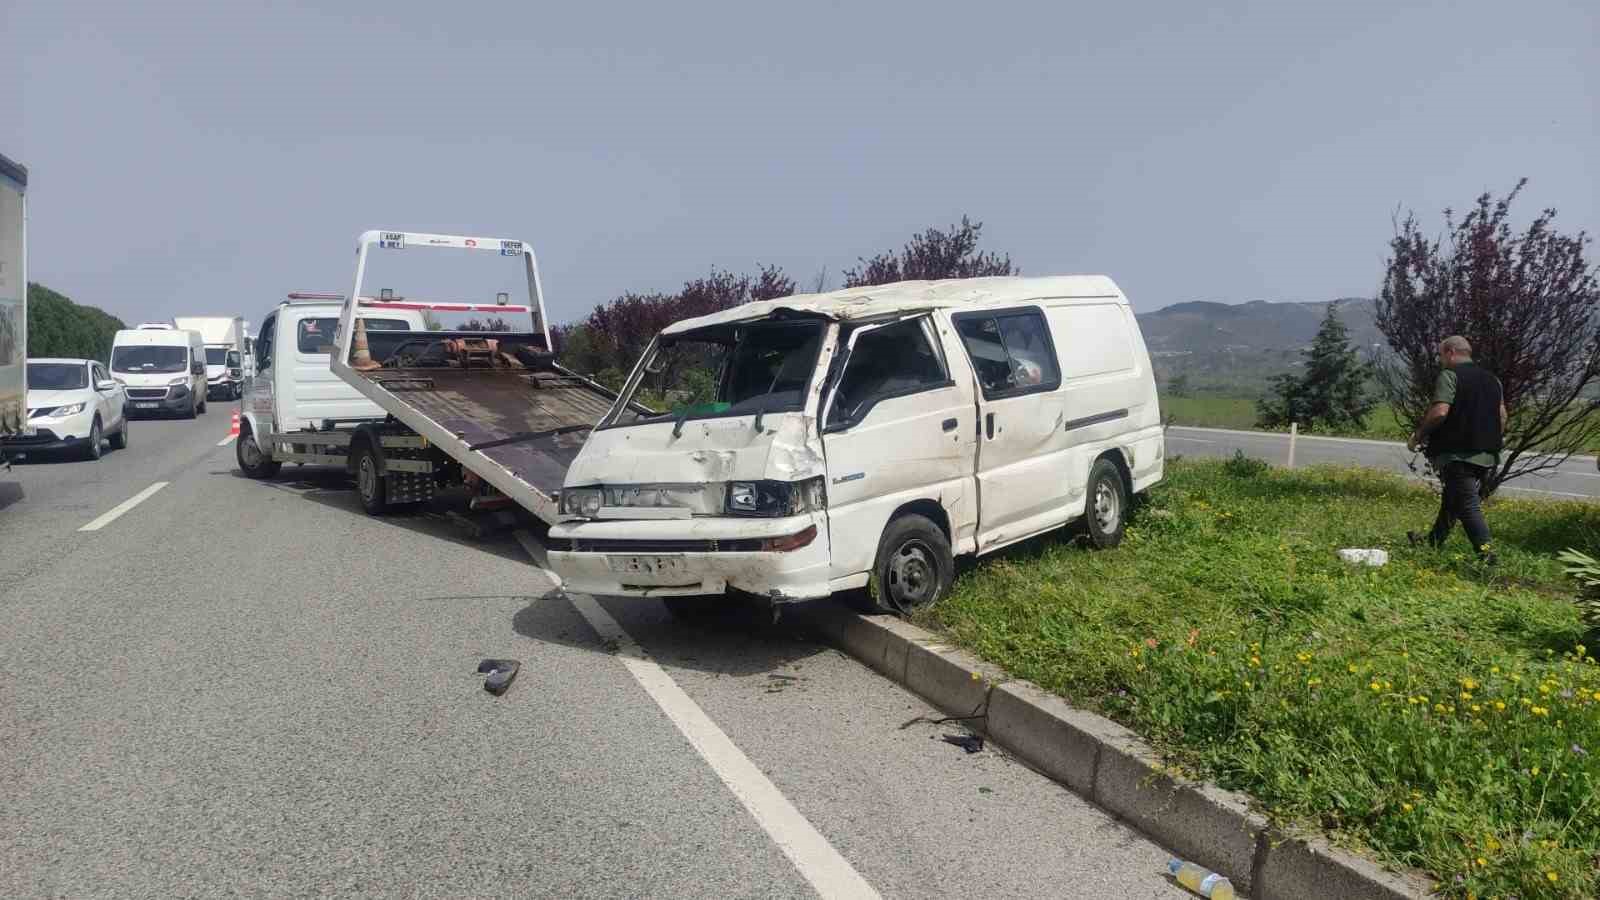 Yalova’da kontrolden çıkan minibüs takla attı, 2 kişi yaralandı
